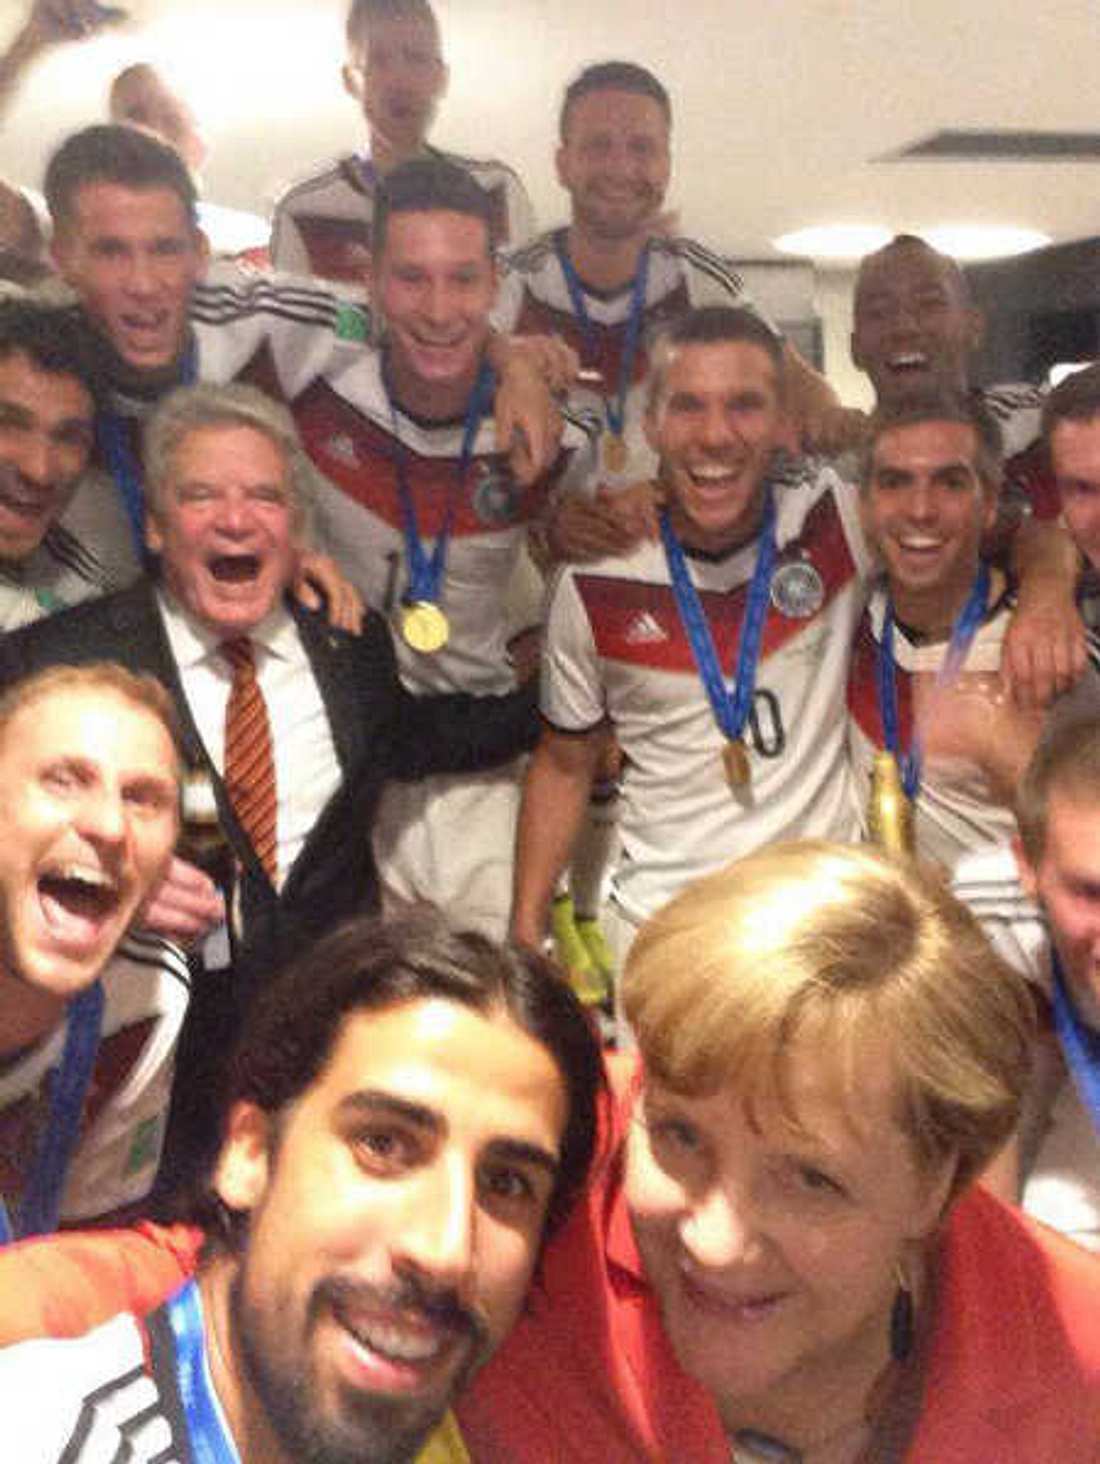 WM 2014: Gruppen-Selfie mit Angela Merkel!